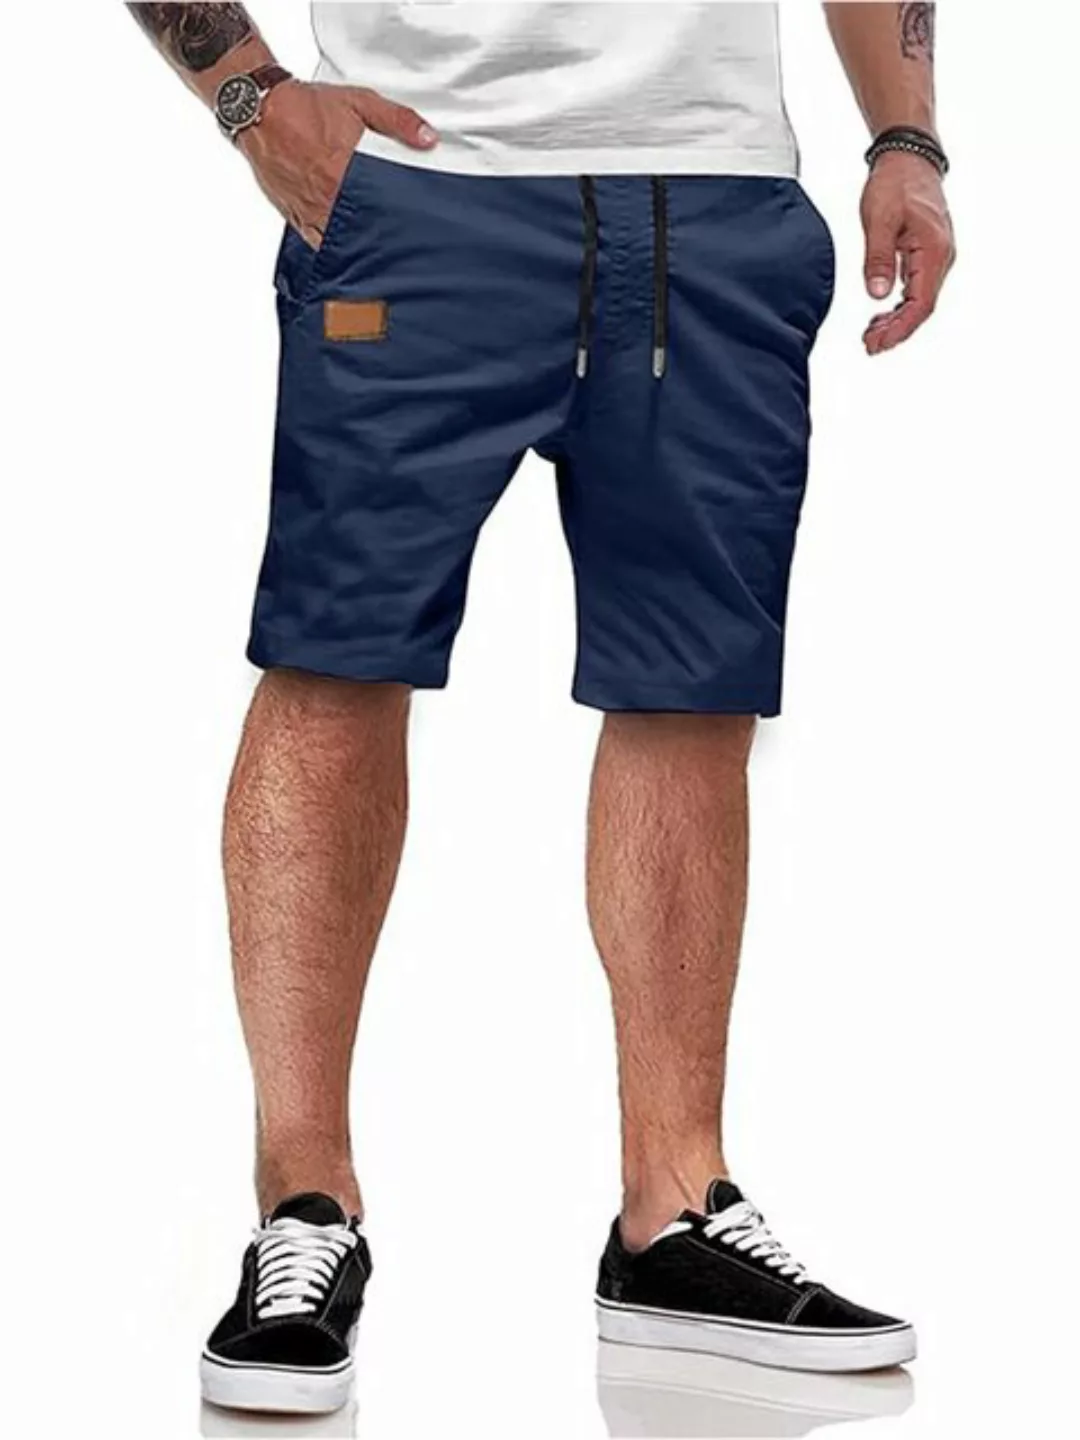 KIKI Shorts Herren Kurze Hosen Mit Taschen Joggpants Boardshorts Boxershort günstig online kaufen